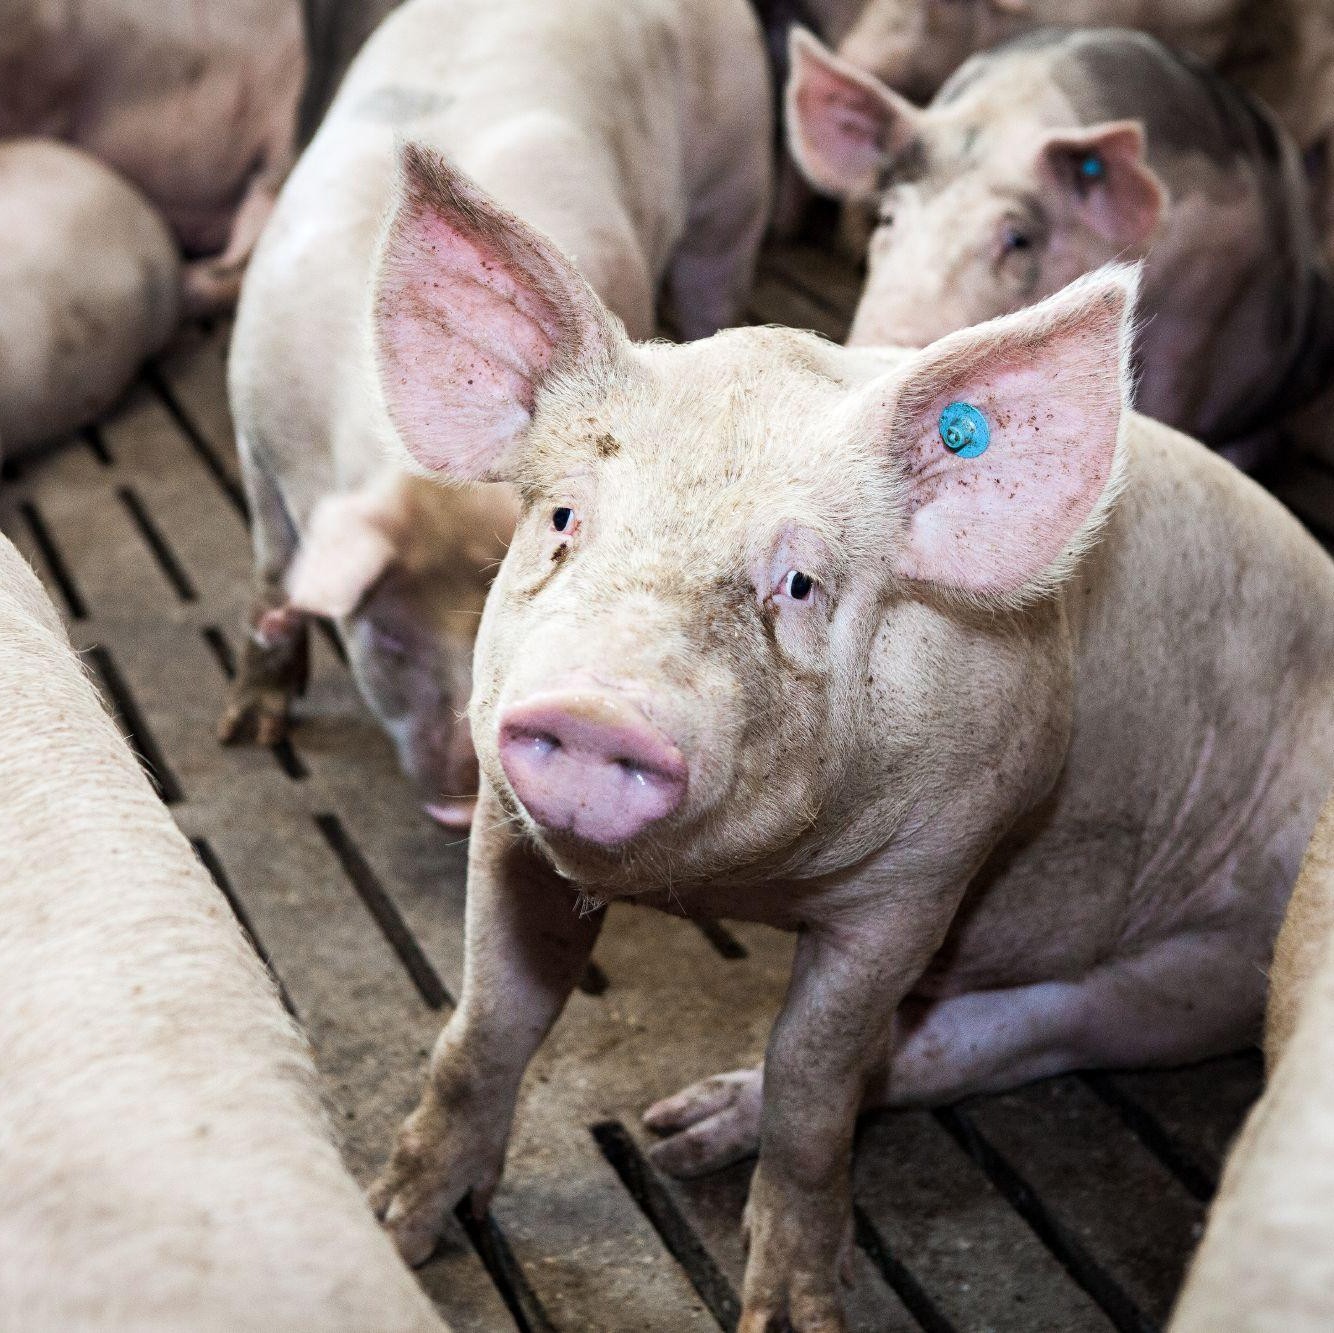 Pig with ear tag on a pig farm